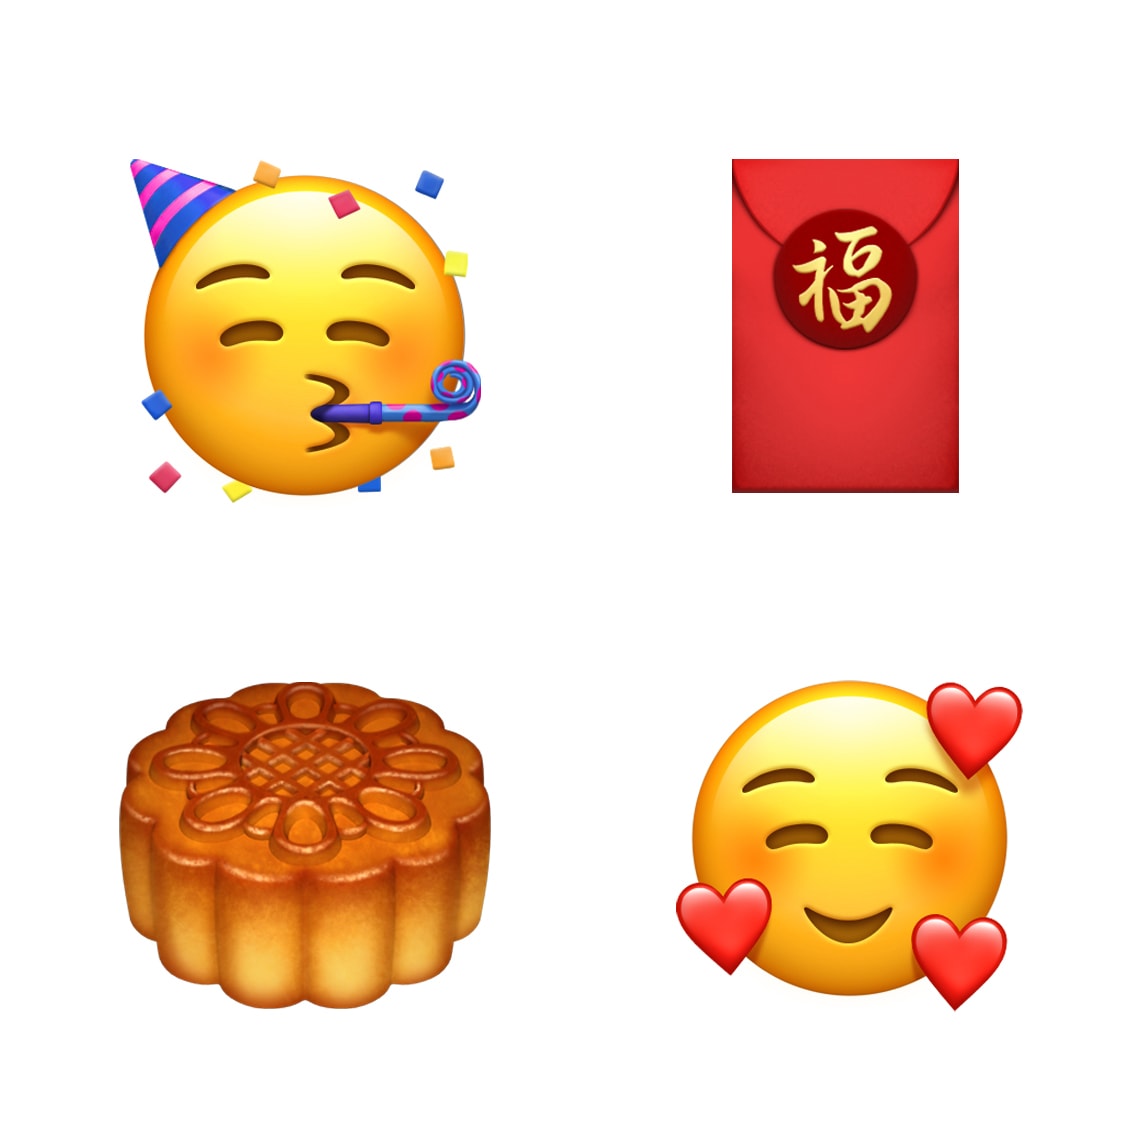 Novos emojis de 2018